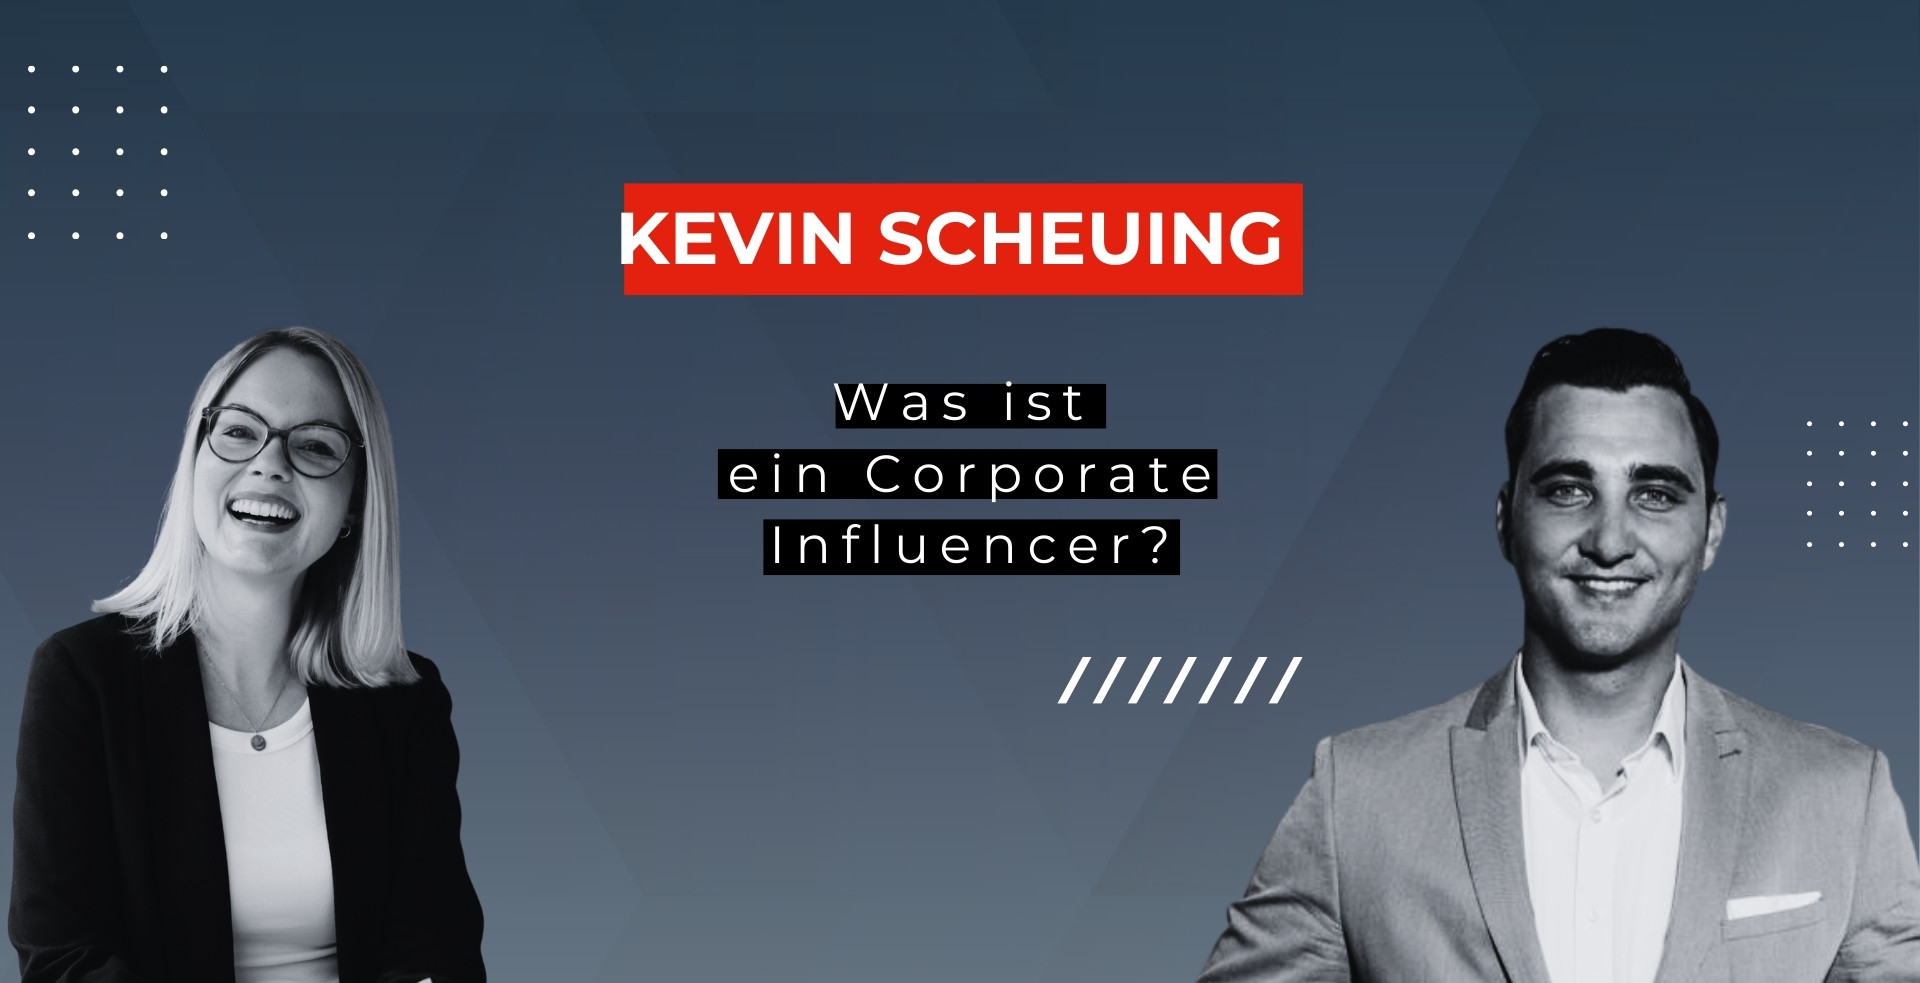 Was ist ein Corporate Influencer? Kevin Scheuing im EpicWork Podcast